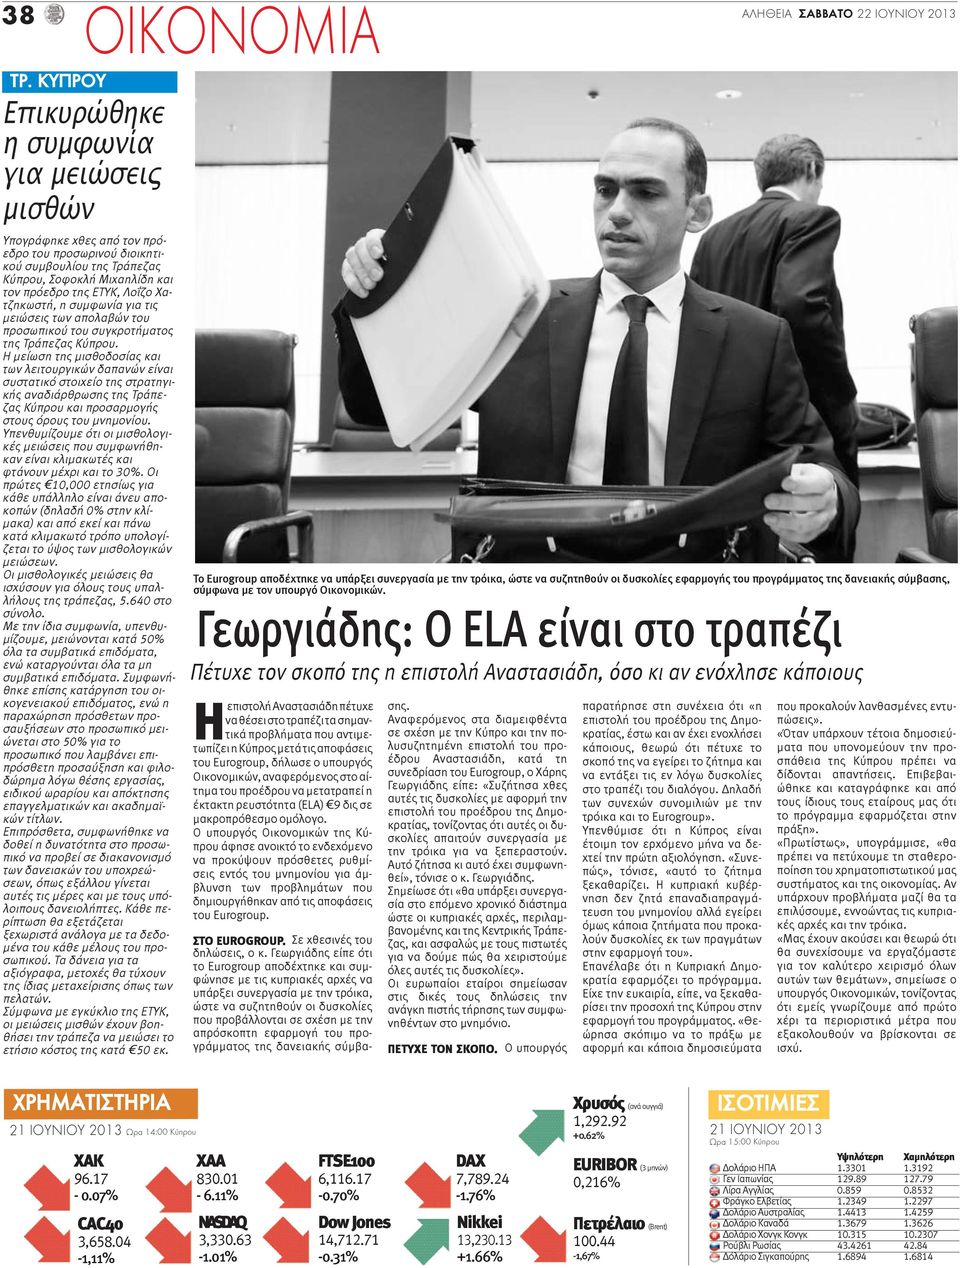 Χατζηκωστή, η συμφωνία για τις μειώσεις των απολαβών του προσωπικού του συγκροτήματος της Τράπεζας Κύπρου.